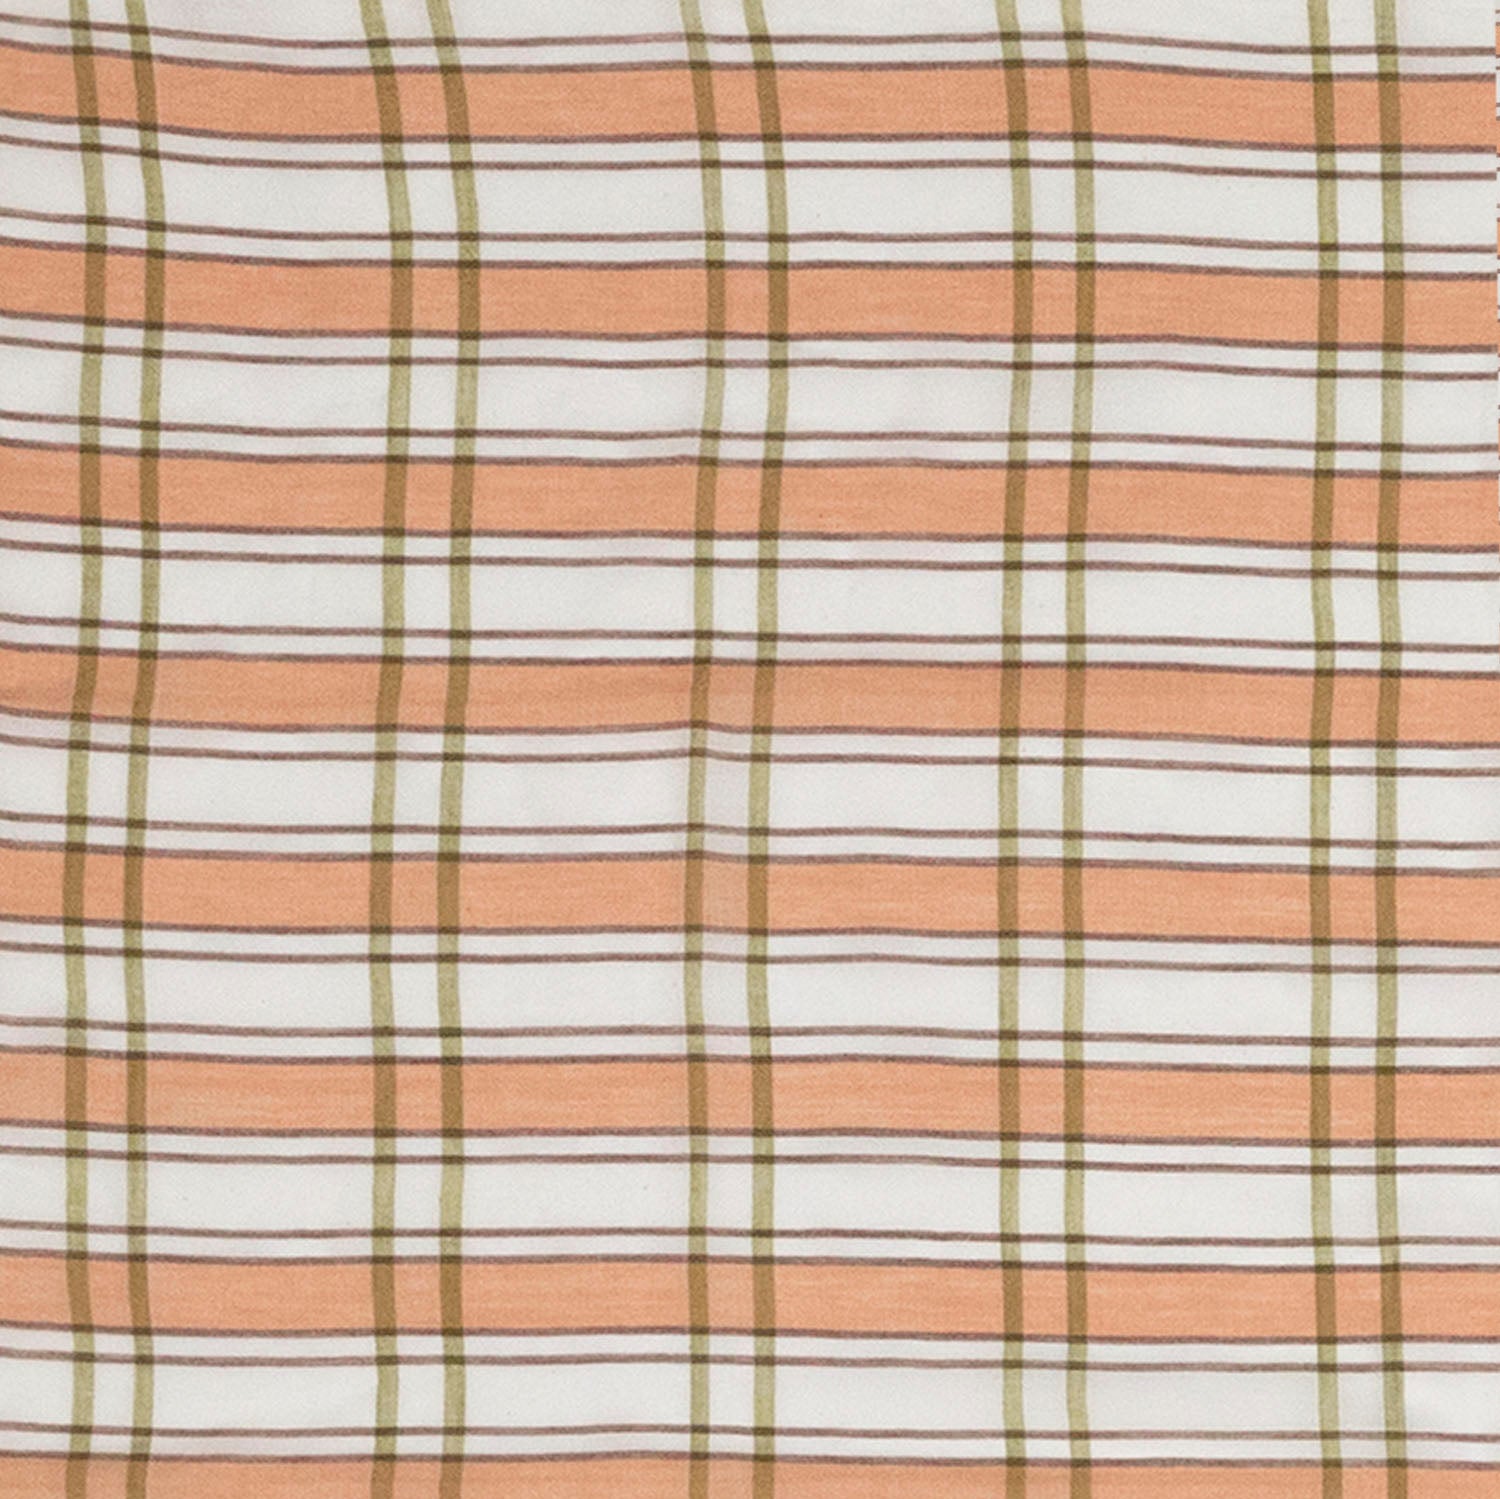 Green/Cream Checkered Homespun Fabric - Lightweight